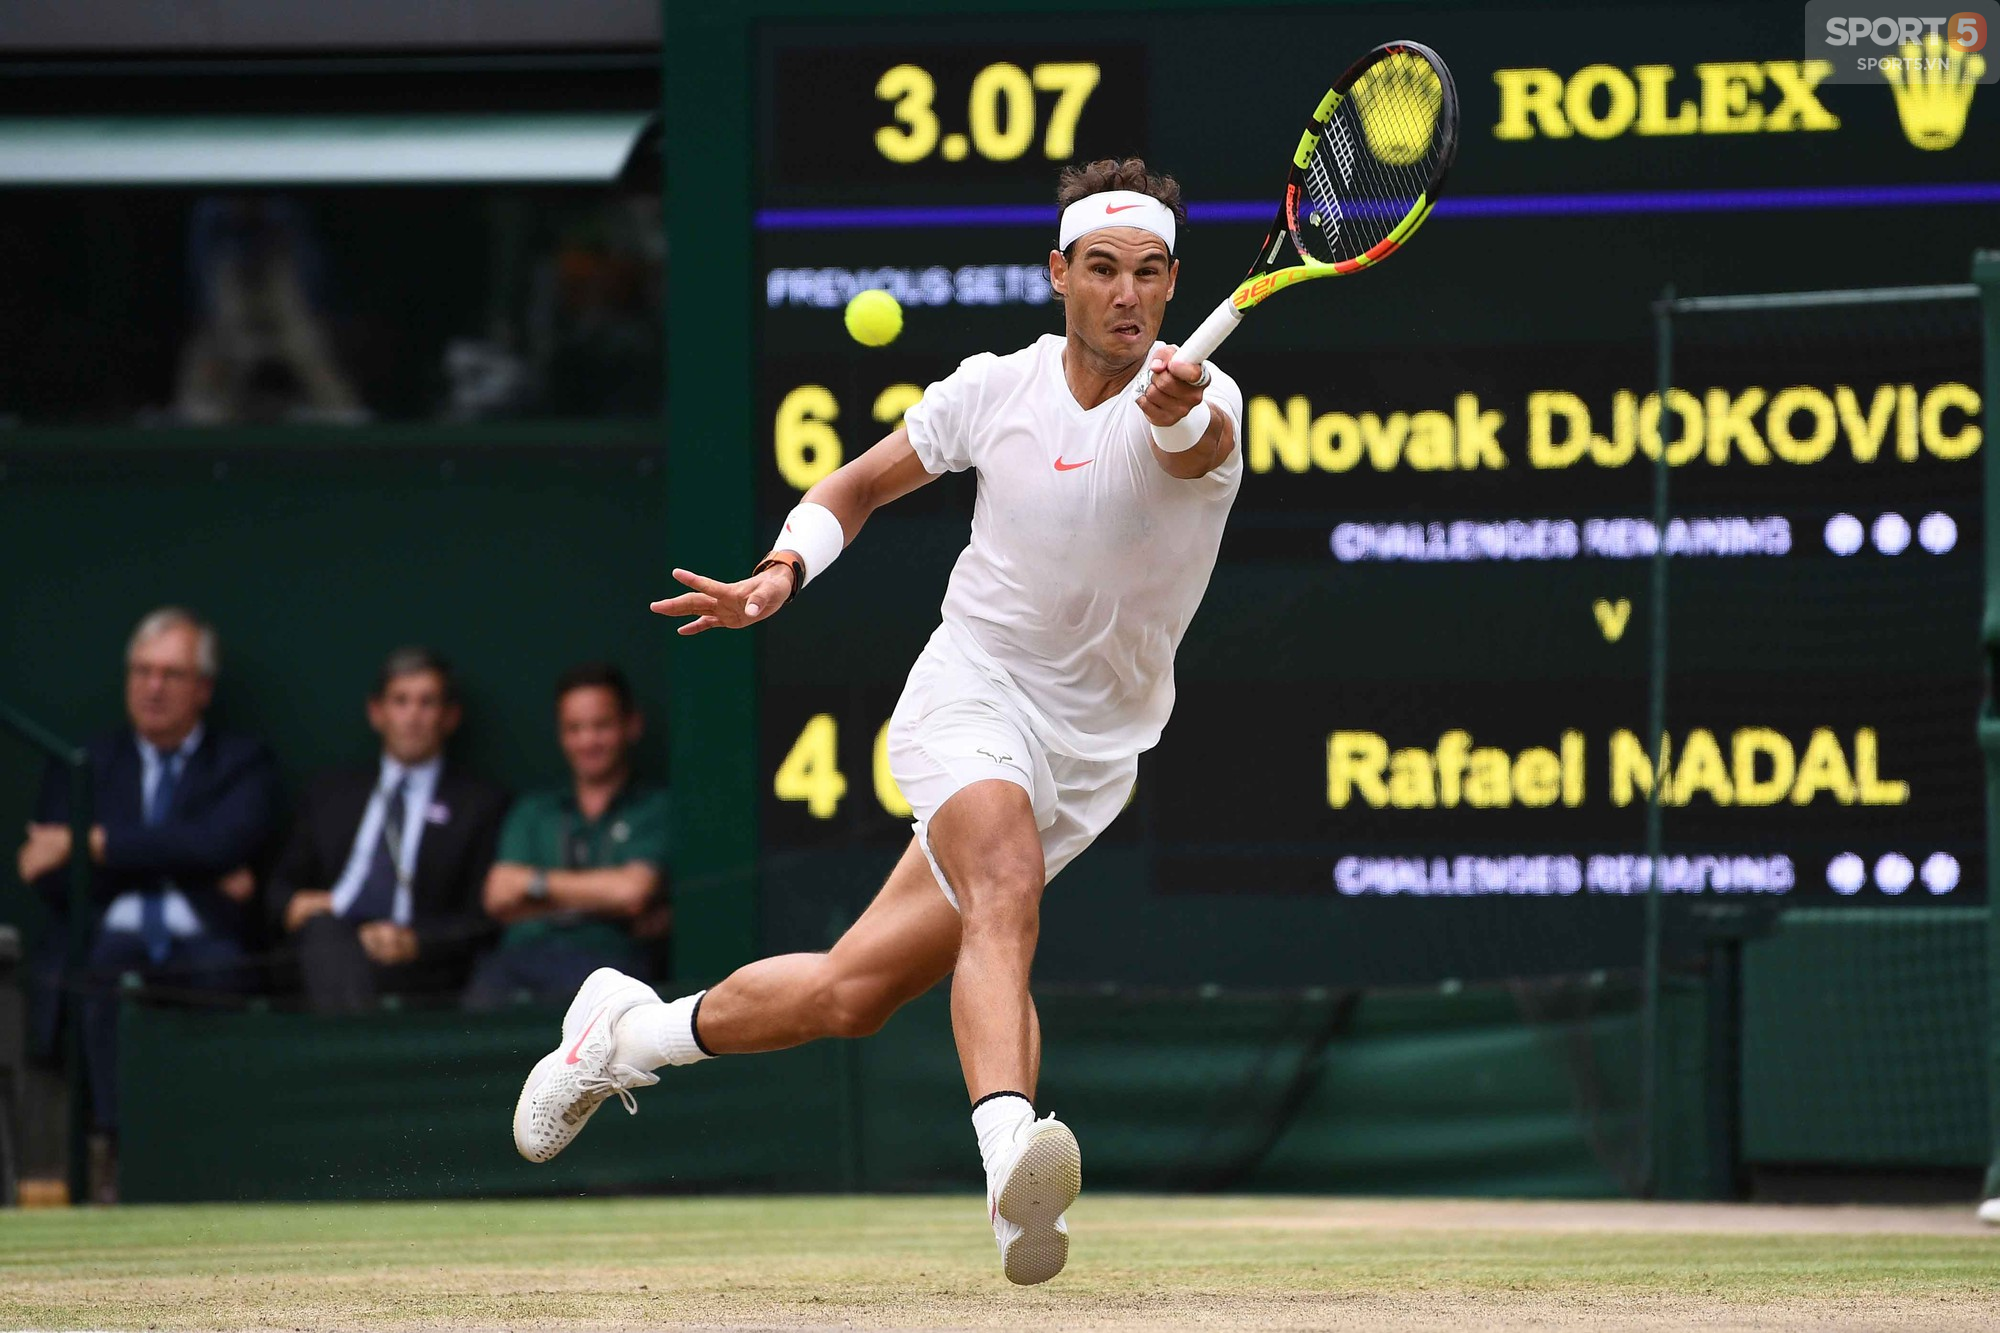 Quật ngã Nadal sau 5 set căng hơn dây đàn, Djokovic vào chung kết Wimbledon - Ảnh 5.